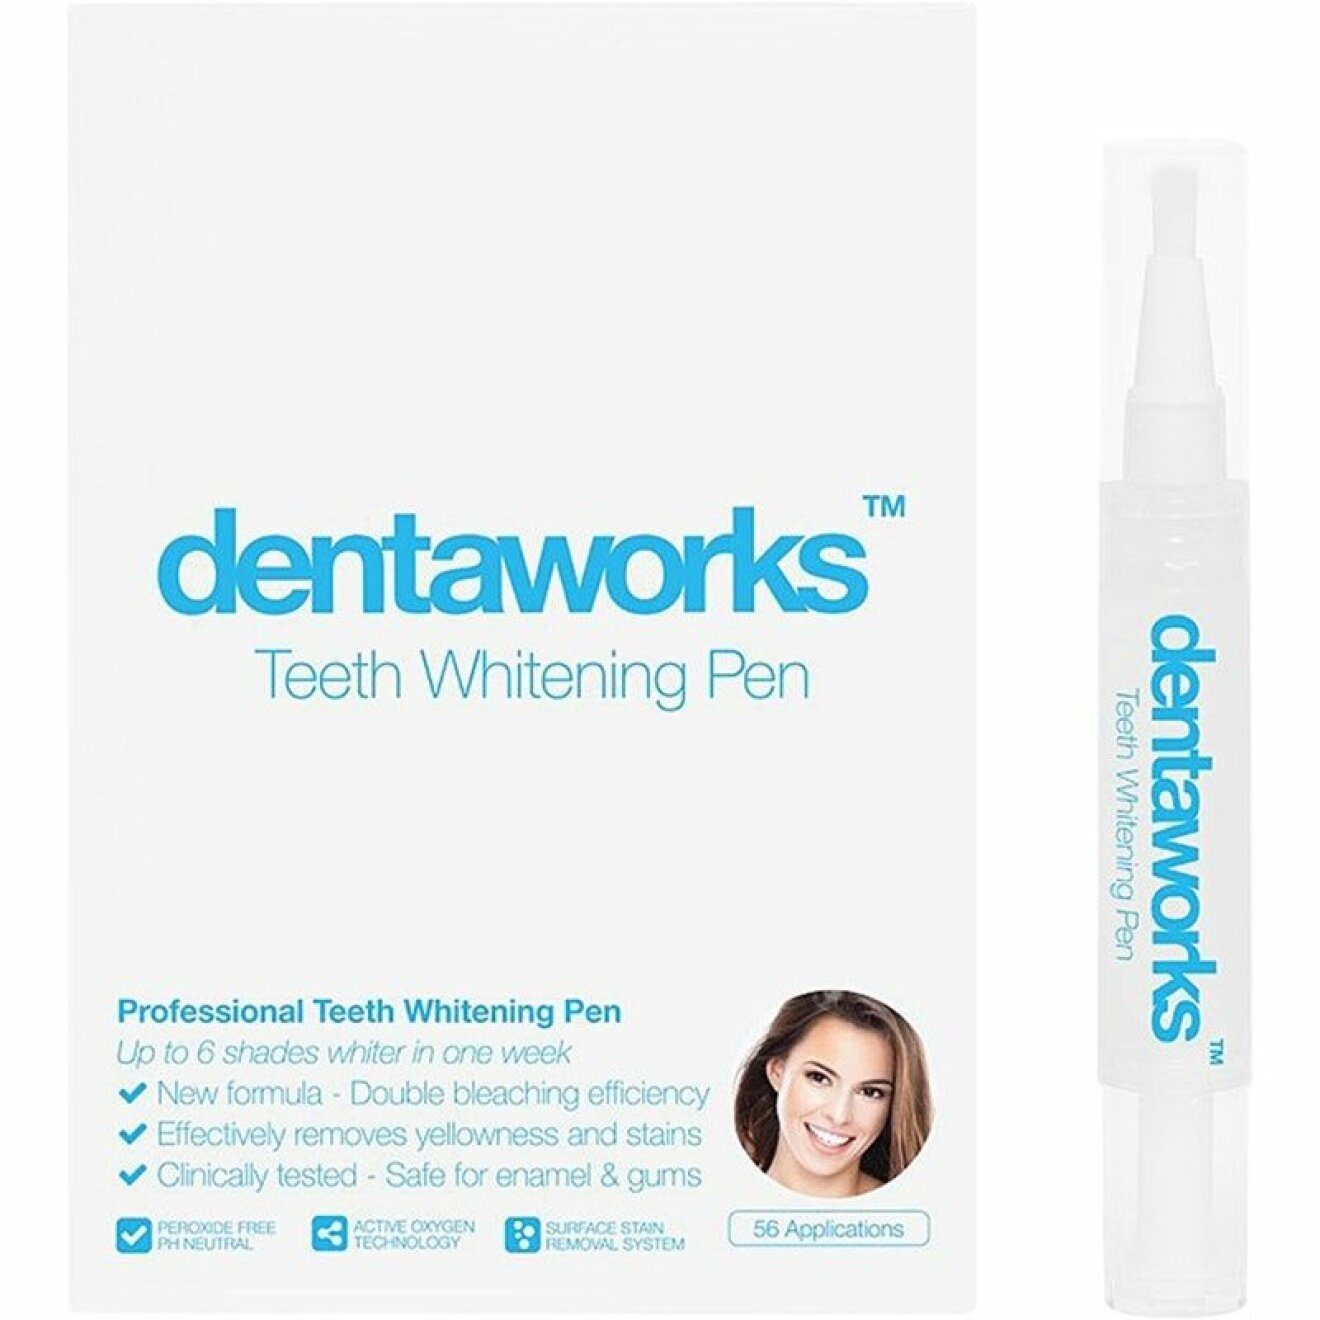 dentaworks teeth whitening pen tandblekningspenna bäst i test betyg omdöme